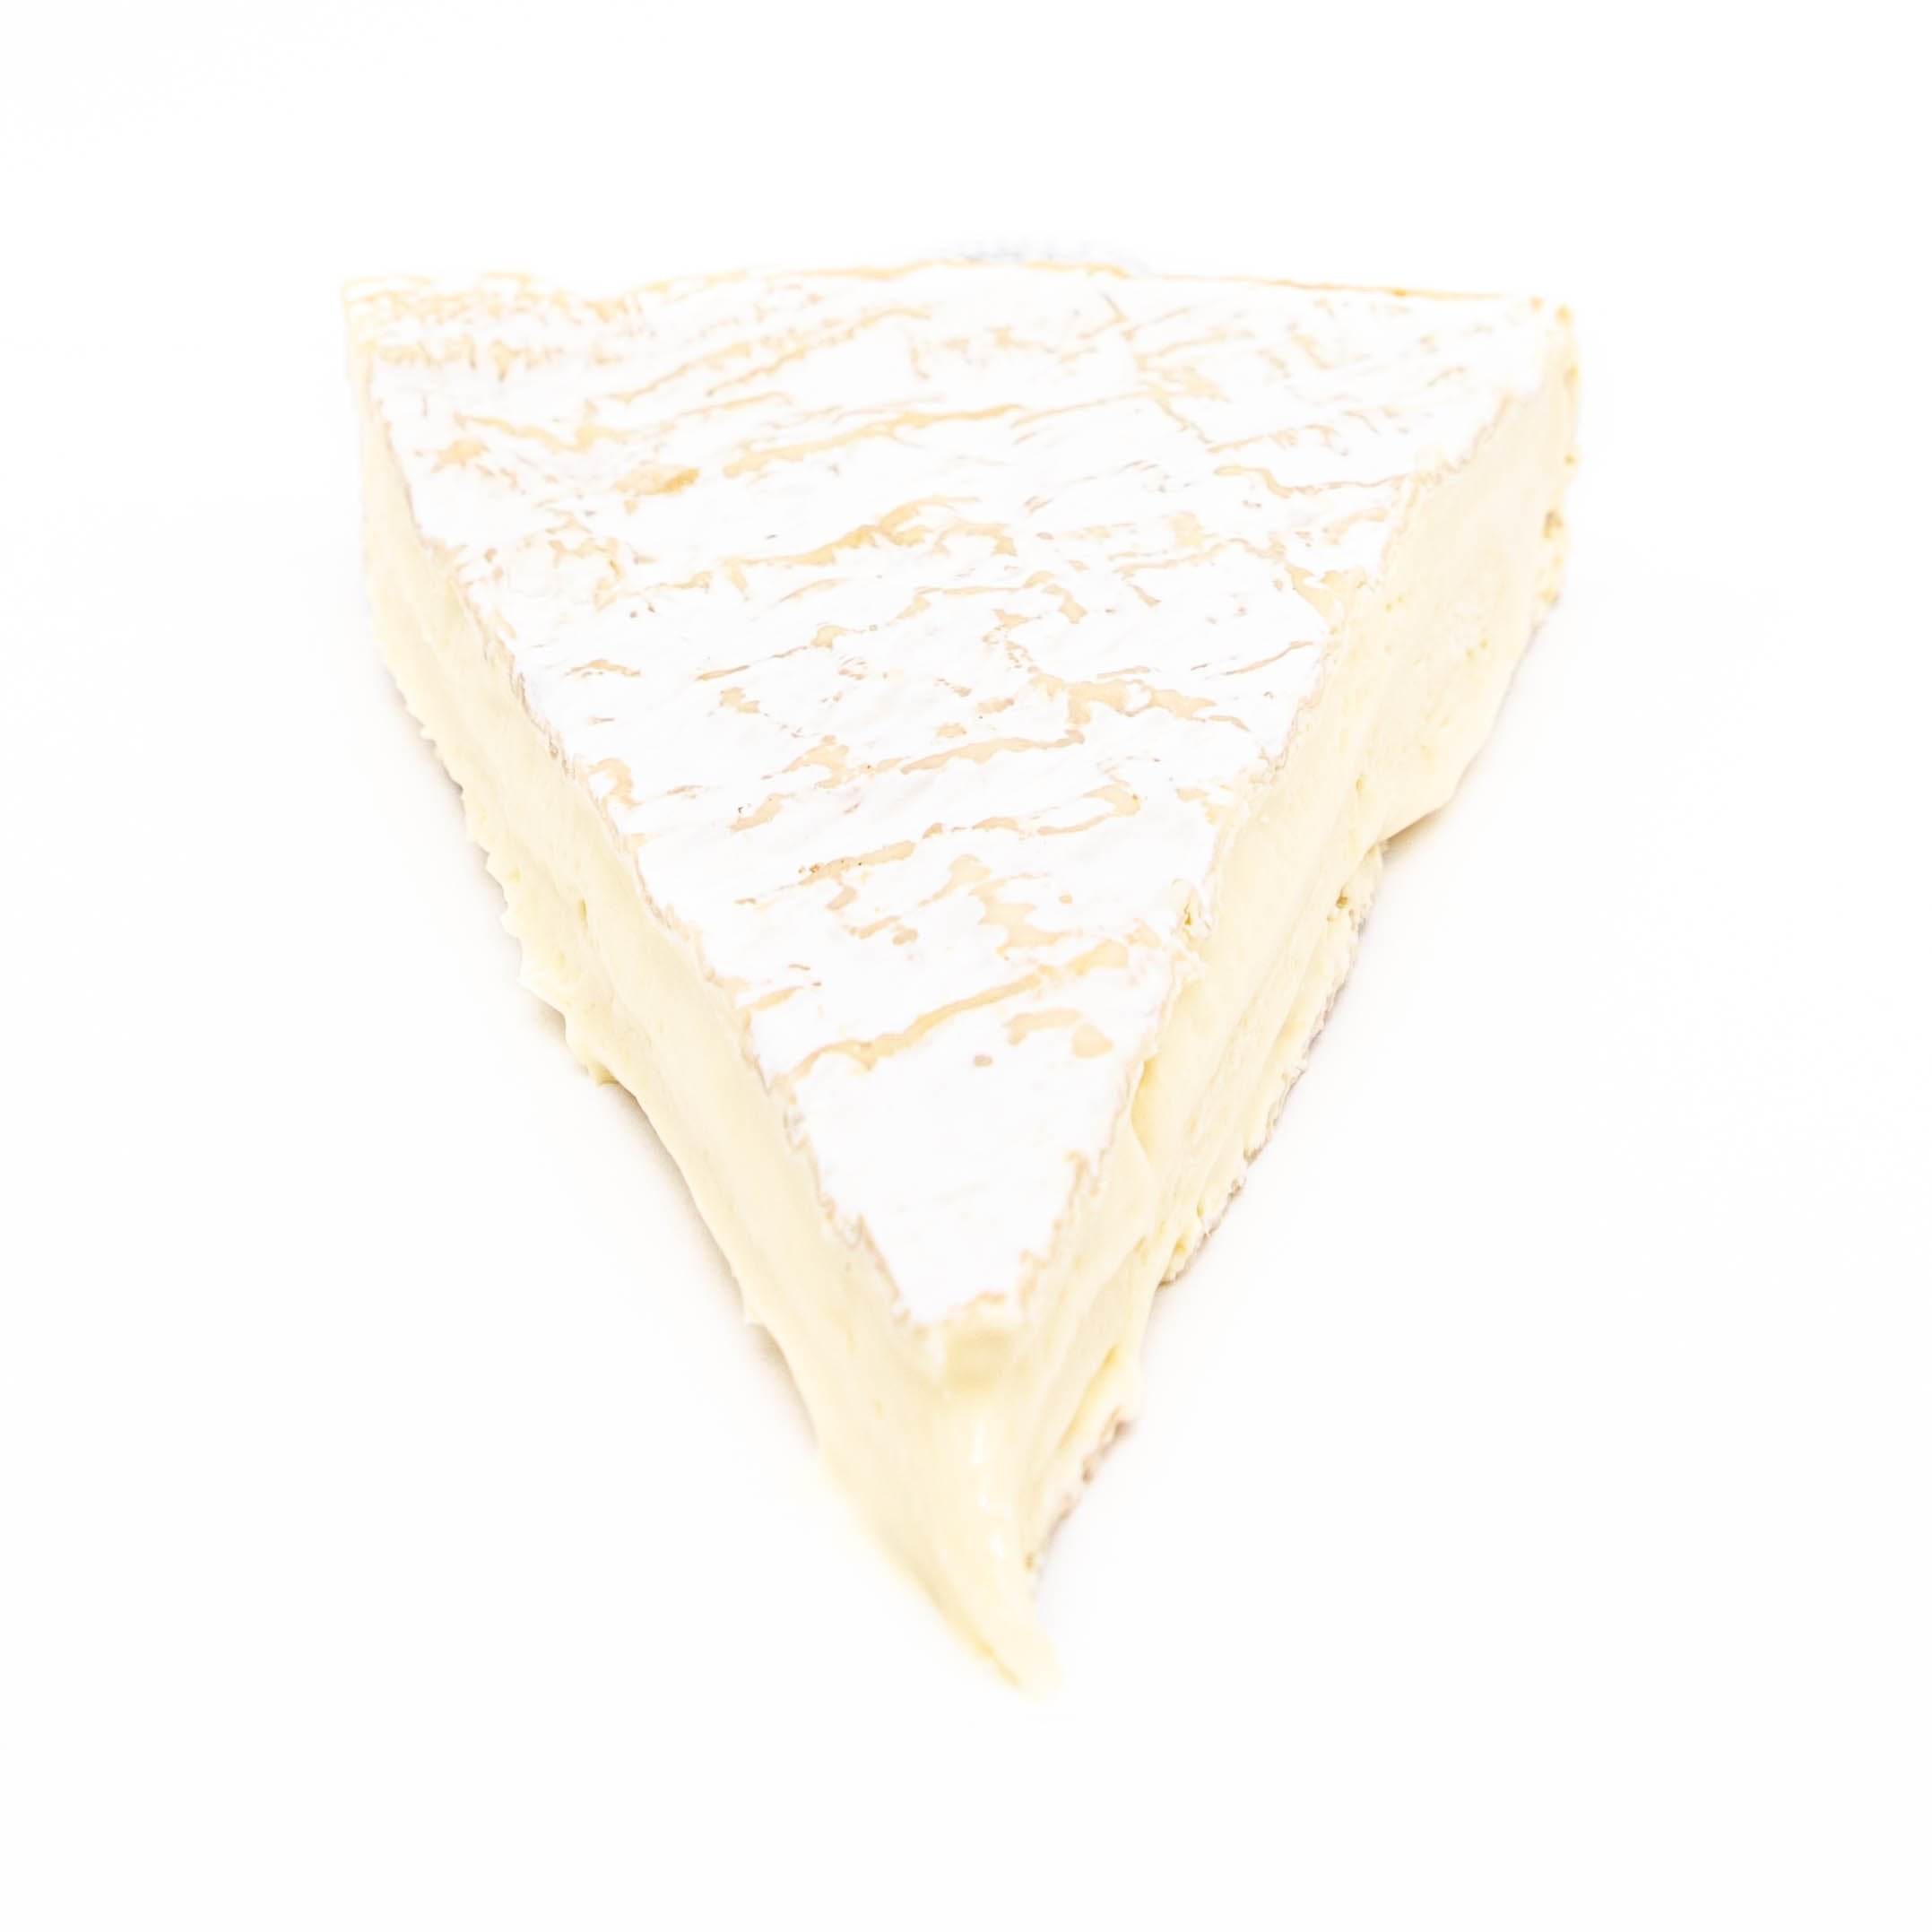 Brie de Meaux.